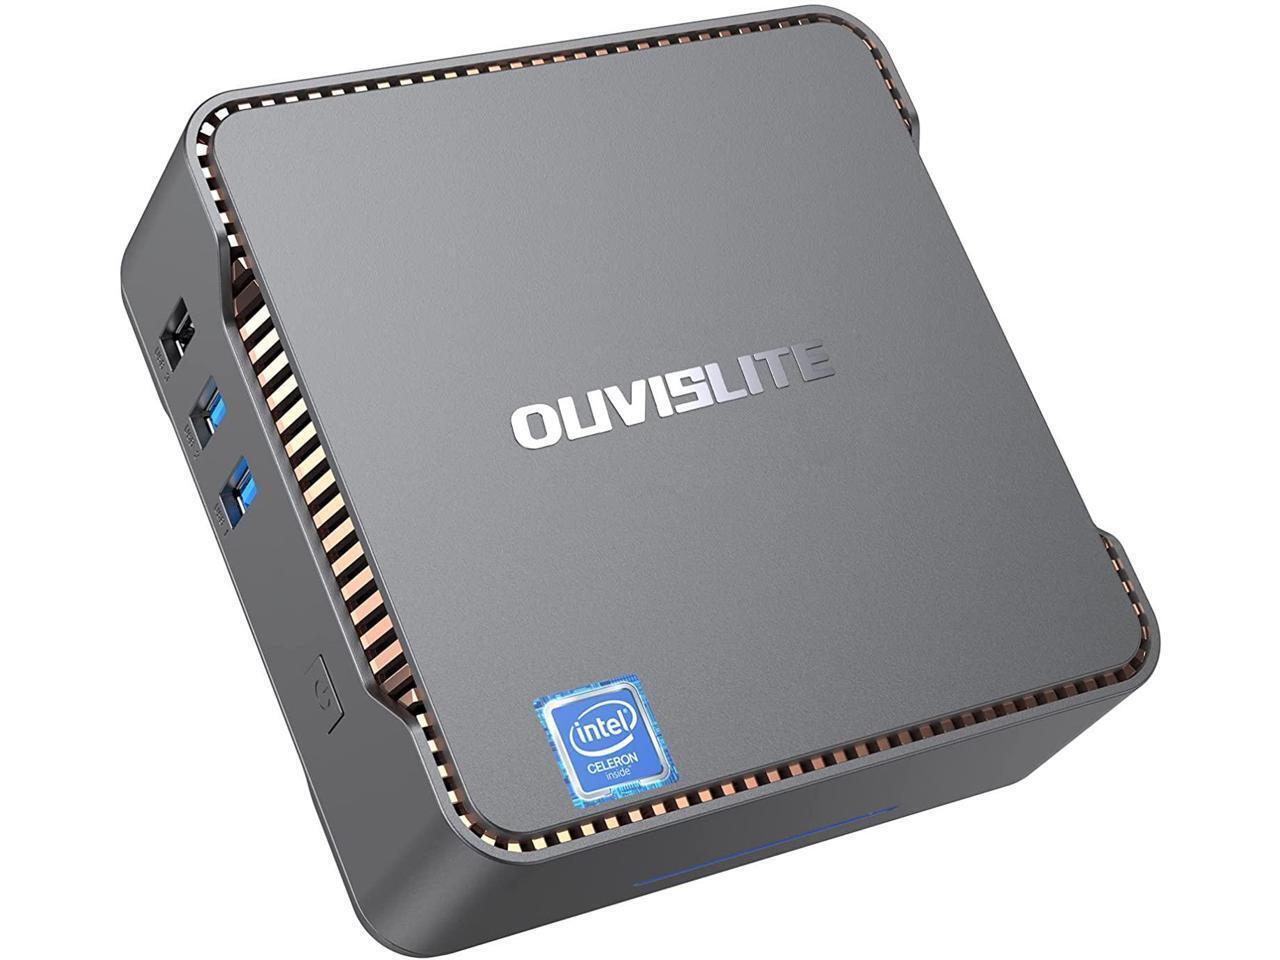 OUVISLITE 4K Mini PC Intel J4125 Quad Core Win10 8GB DDR3 256GB SSD HDMI Display